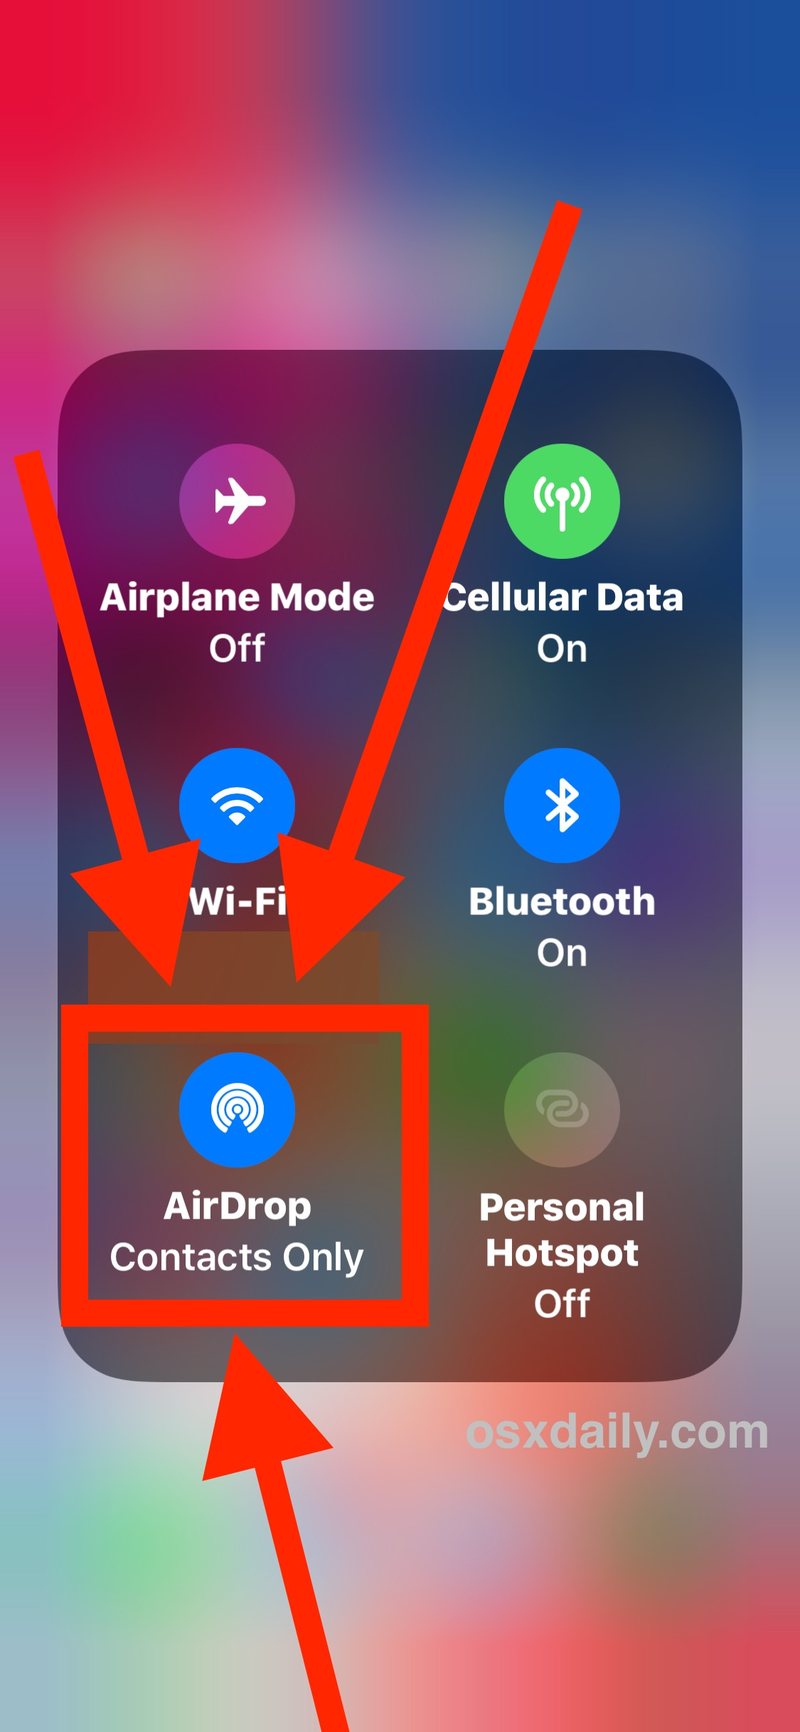 点击 AirDrop 按钮扩展的 iOS 11 控制中心